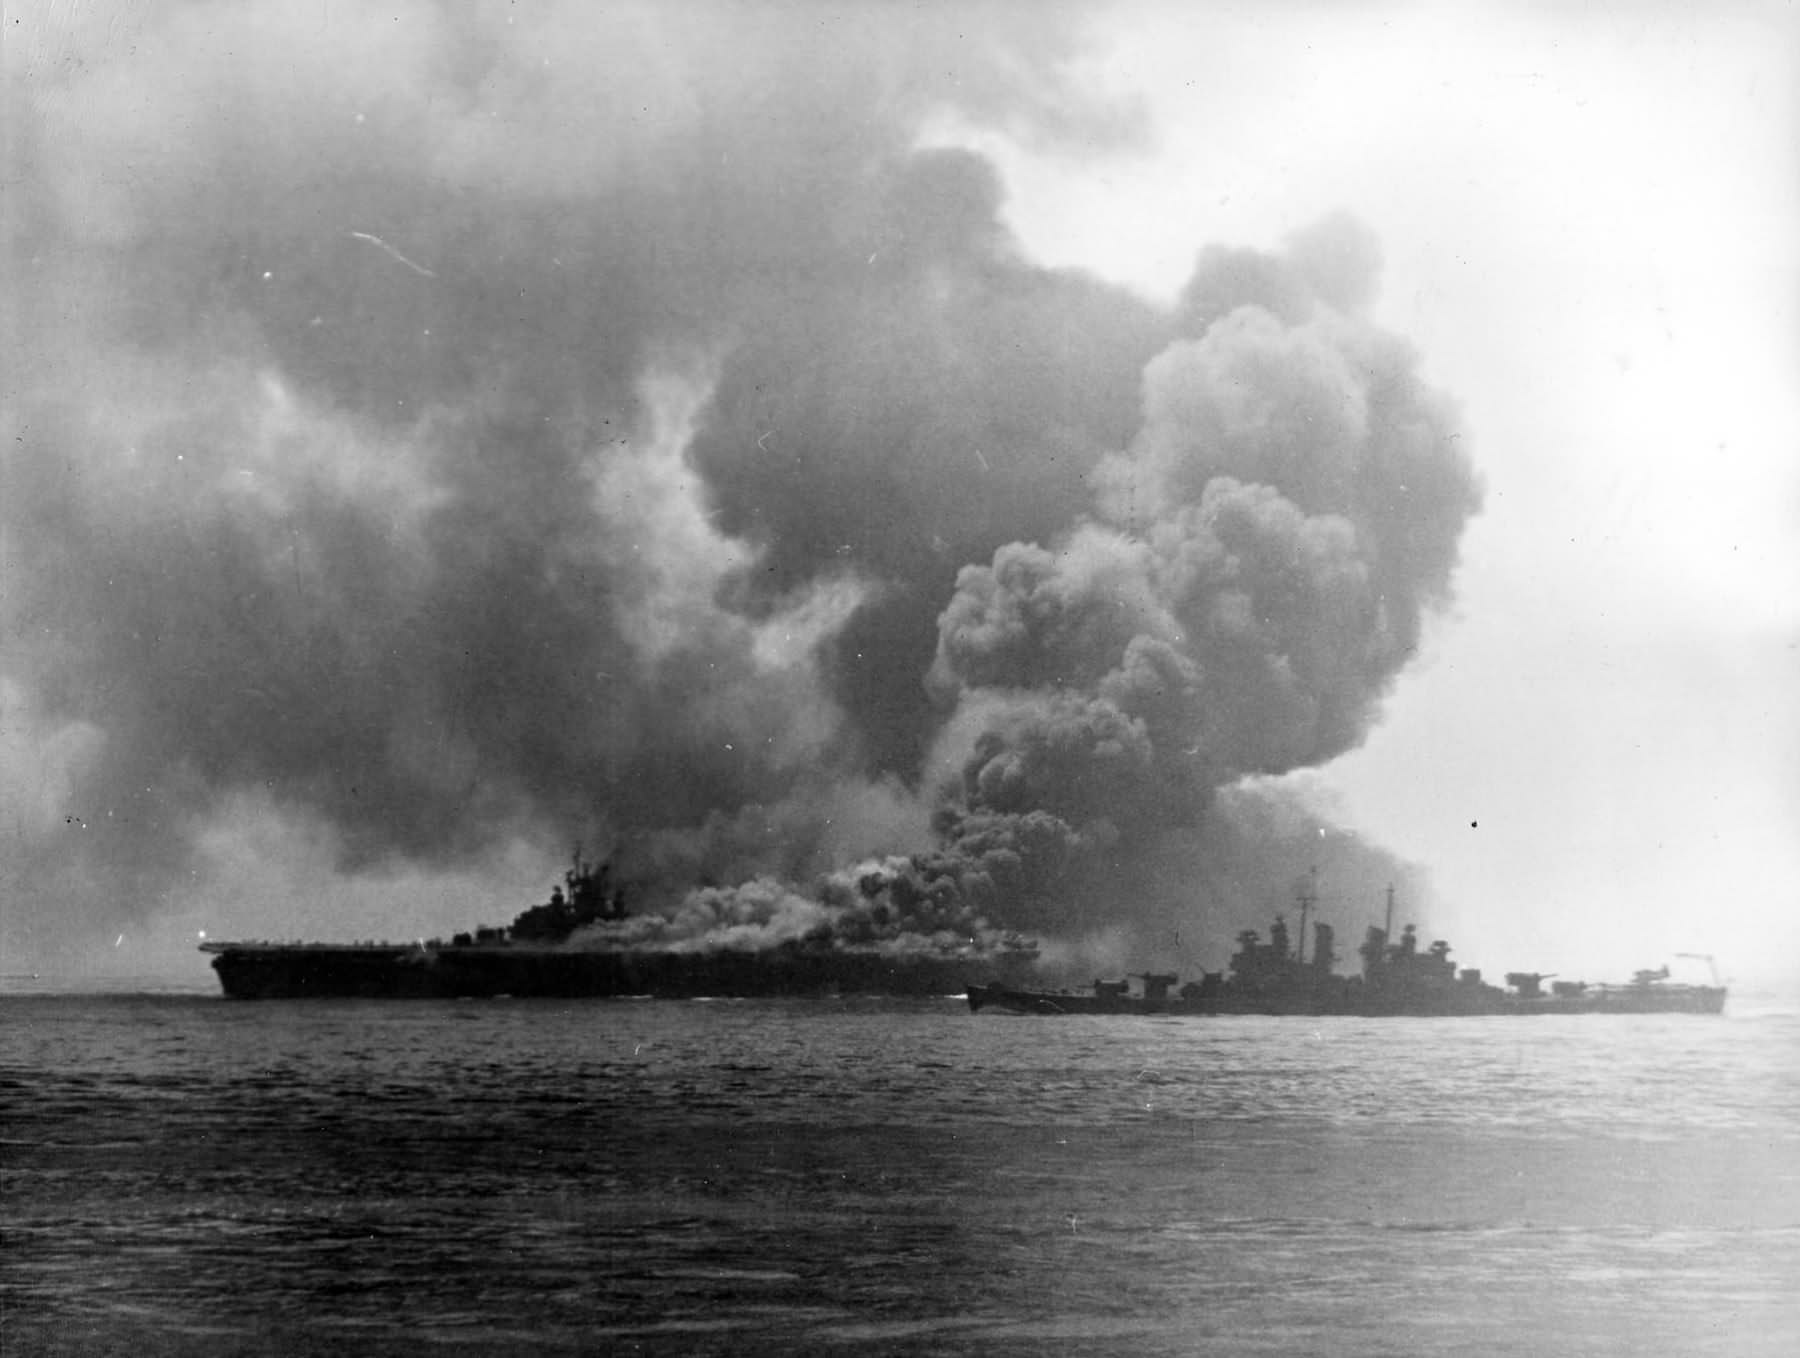 Kamikaze aircraft slammed into the aircraft carrier USS Bunker Hill (CV-17)